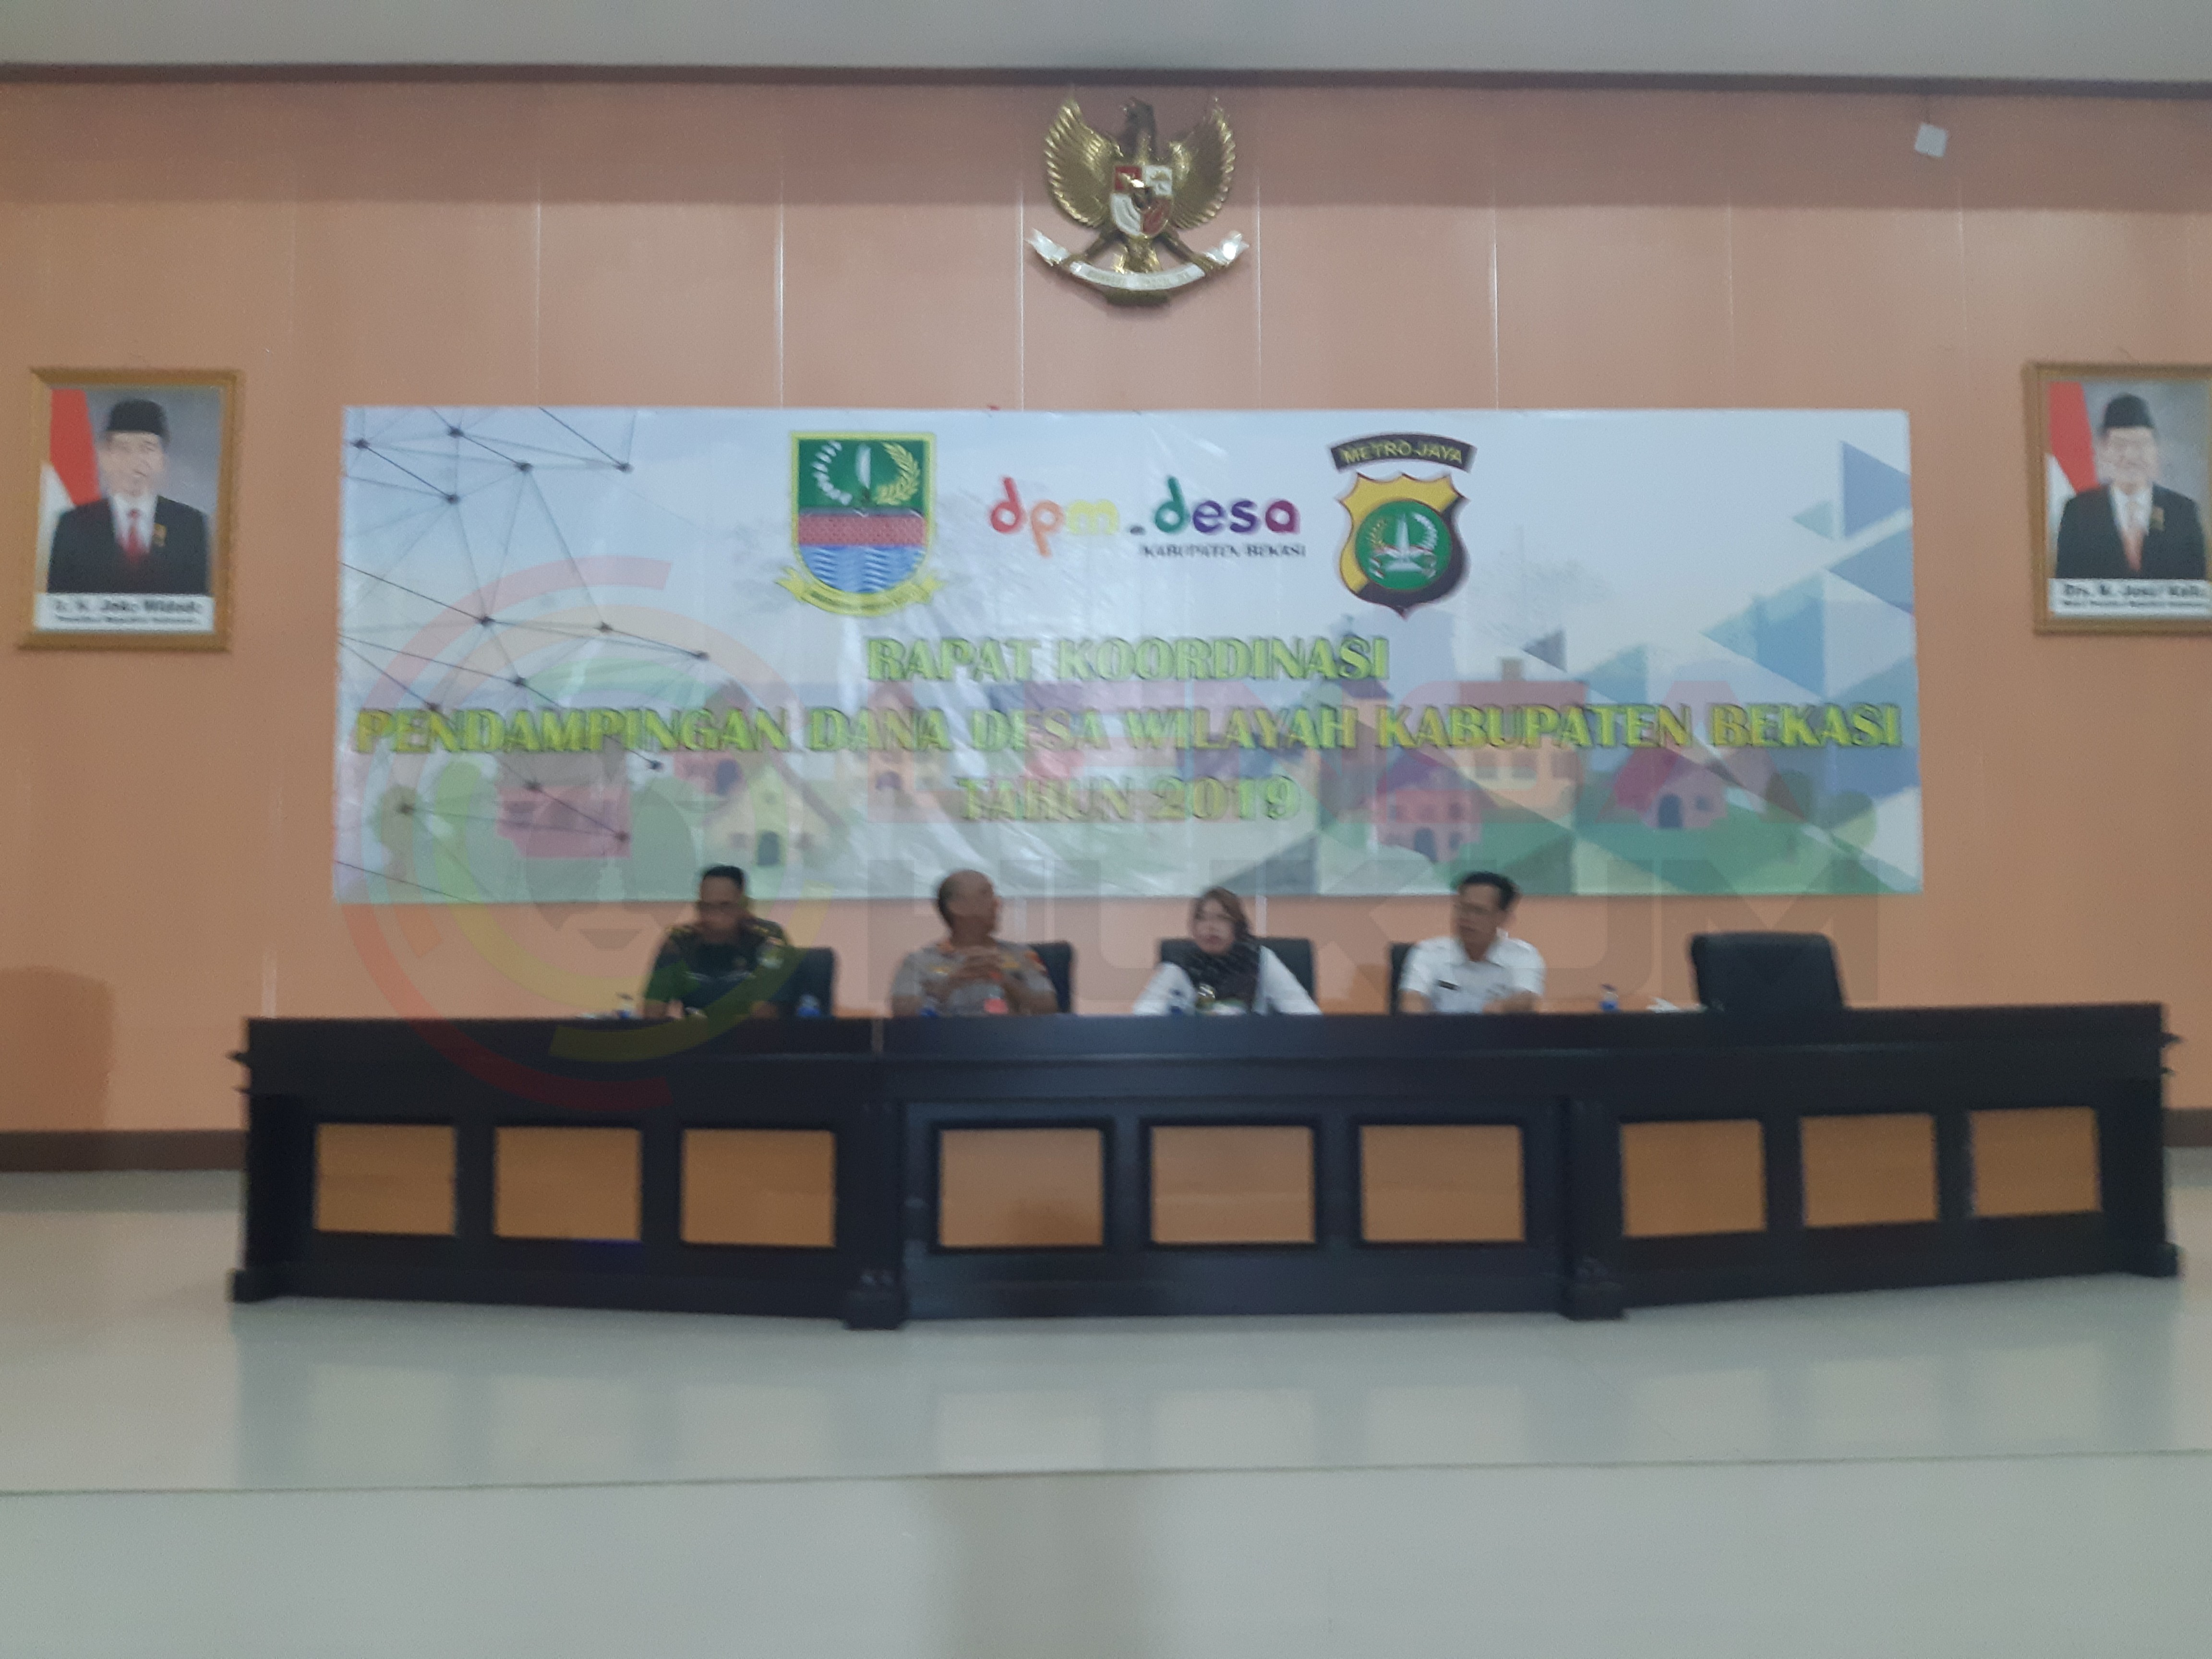 LensaHukum.co.id - 20190731 112225 - Rapat Koordinasi Pendampingan Dana Desa Kabupaten Bekasi 2019